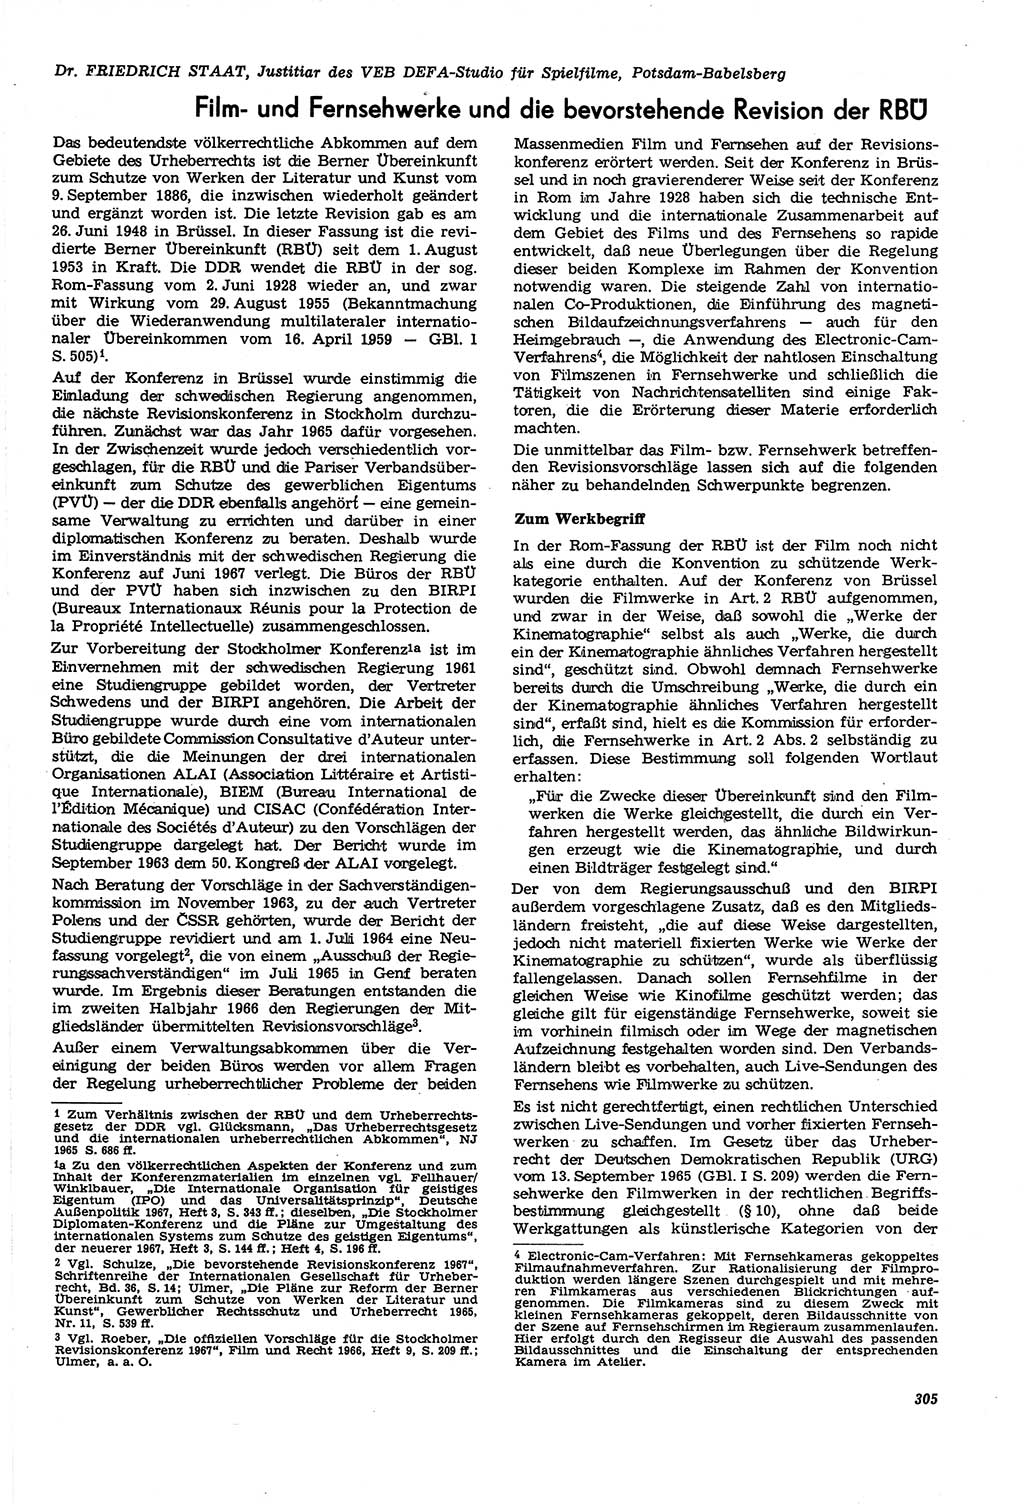 Neue Justiz (NJ), Zeitschrift für Recht und Rechtswissenschaft [Deutsche Demokratische Republik (DDR)], 21. Jahrgang 1967, Seite 305 (NJ DDR 1967, S. 305)